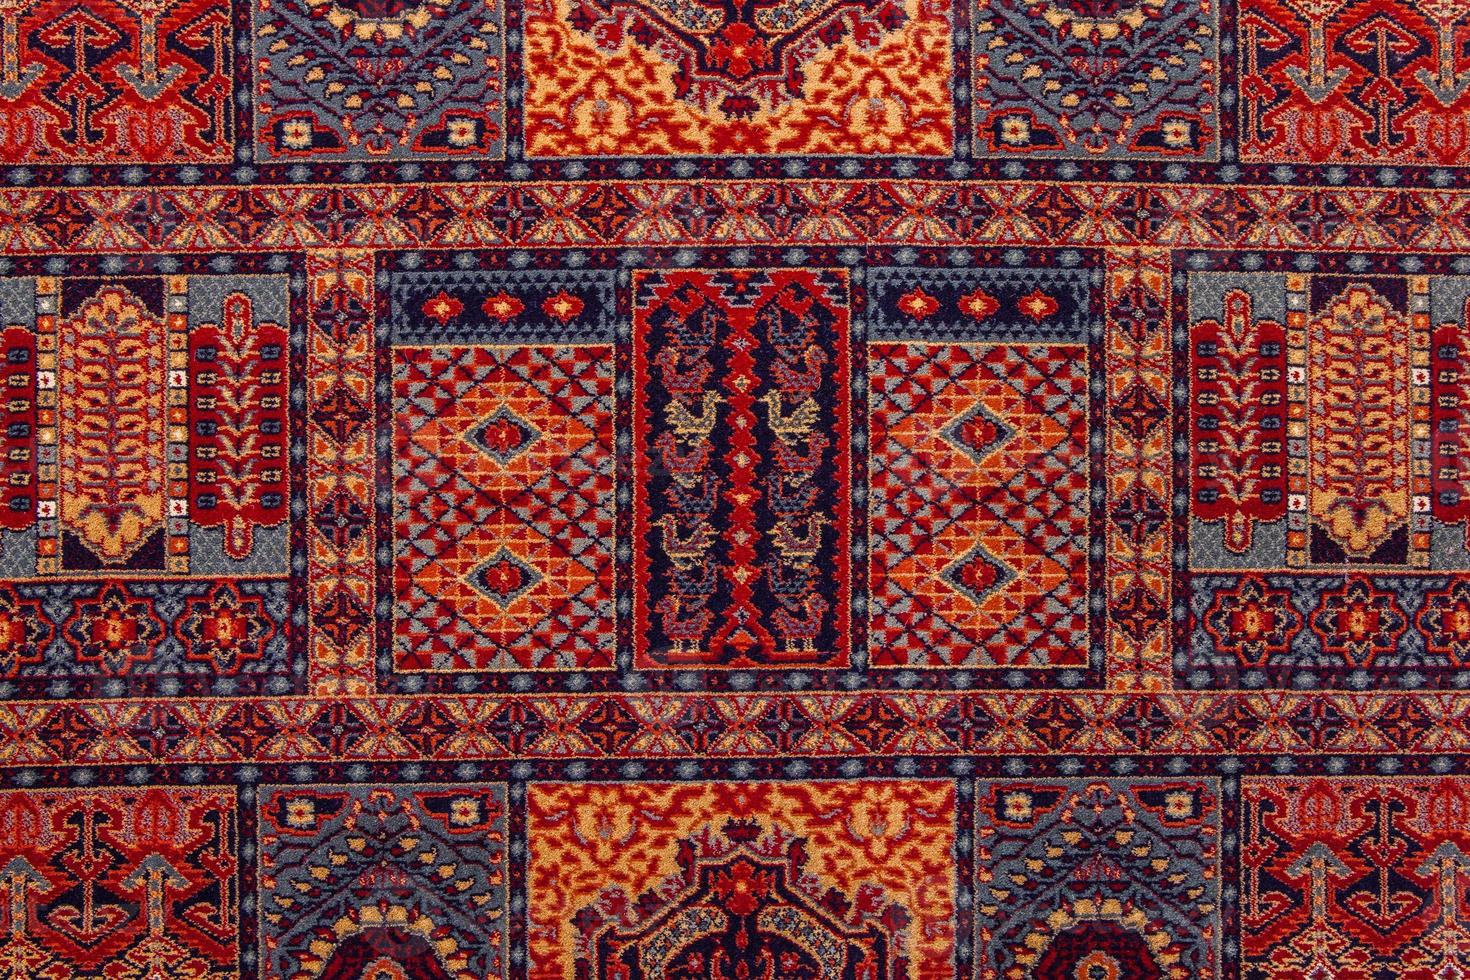 ornamentos de padrão sem emenda folclórico romeno. bordado tradicional romeno. design de textura étnica. design de tapete tradicional. enfeites de tapete. design de tapete rústico foto